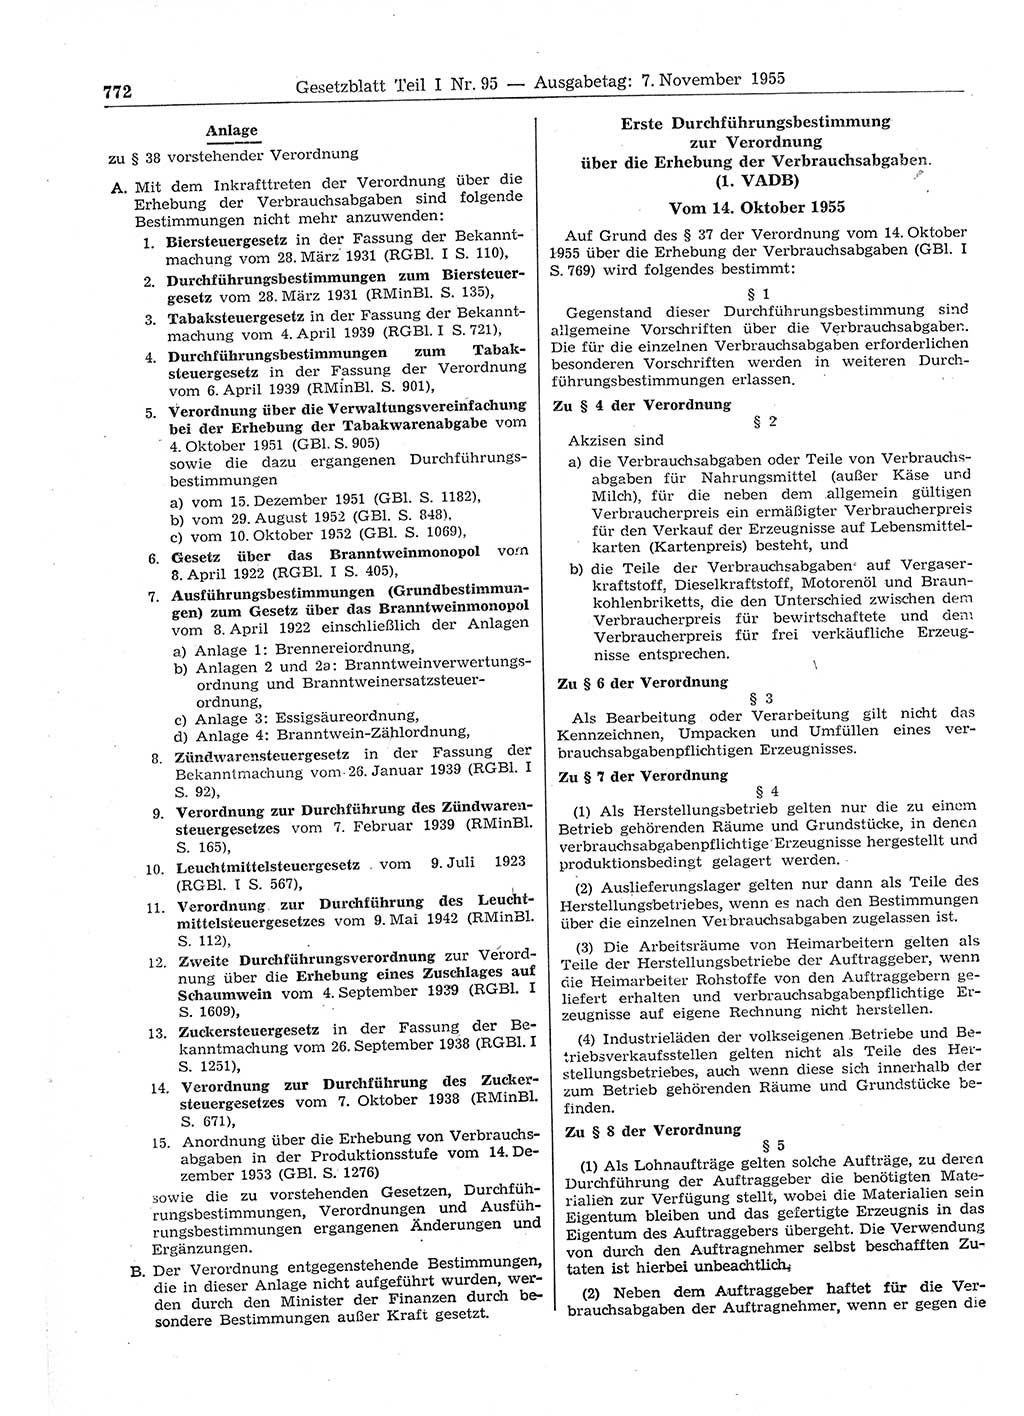 Gesetzblatt (GBl.) der Deutschen Demokratischen Republik (DDR) Teil Ⅰ 1955, Seite 772 (GBl. DDR Ⅰ 1955, S. 772)